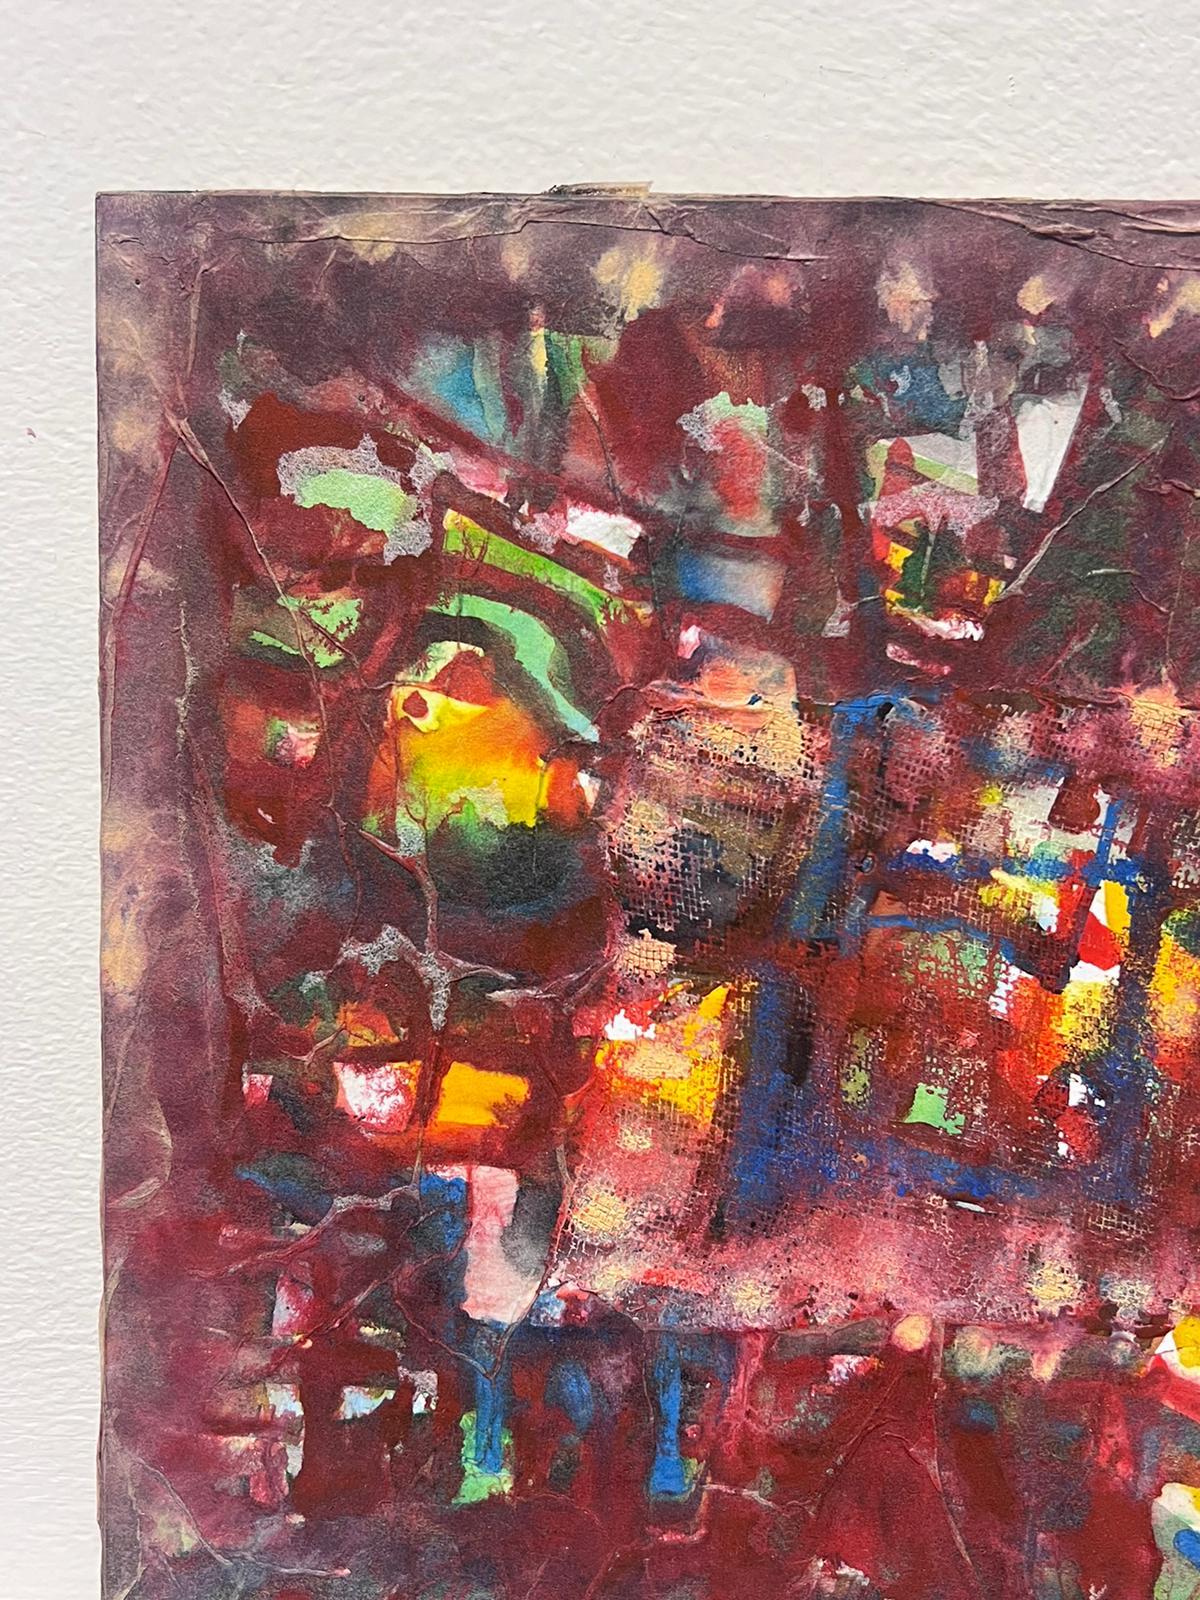 Composition expressionniste abstraite
par Jacques COULAIS (1955-2011)
peinture à l'huile sur carton
sans cadre : 9.75 x 9.75 pouces
état : excellent
provenance : tous les tableaux de cet artiste que nous avons en vente proviennent du Studio de